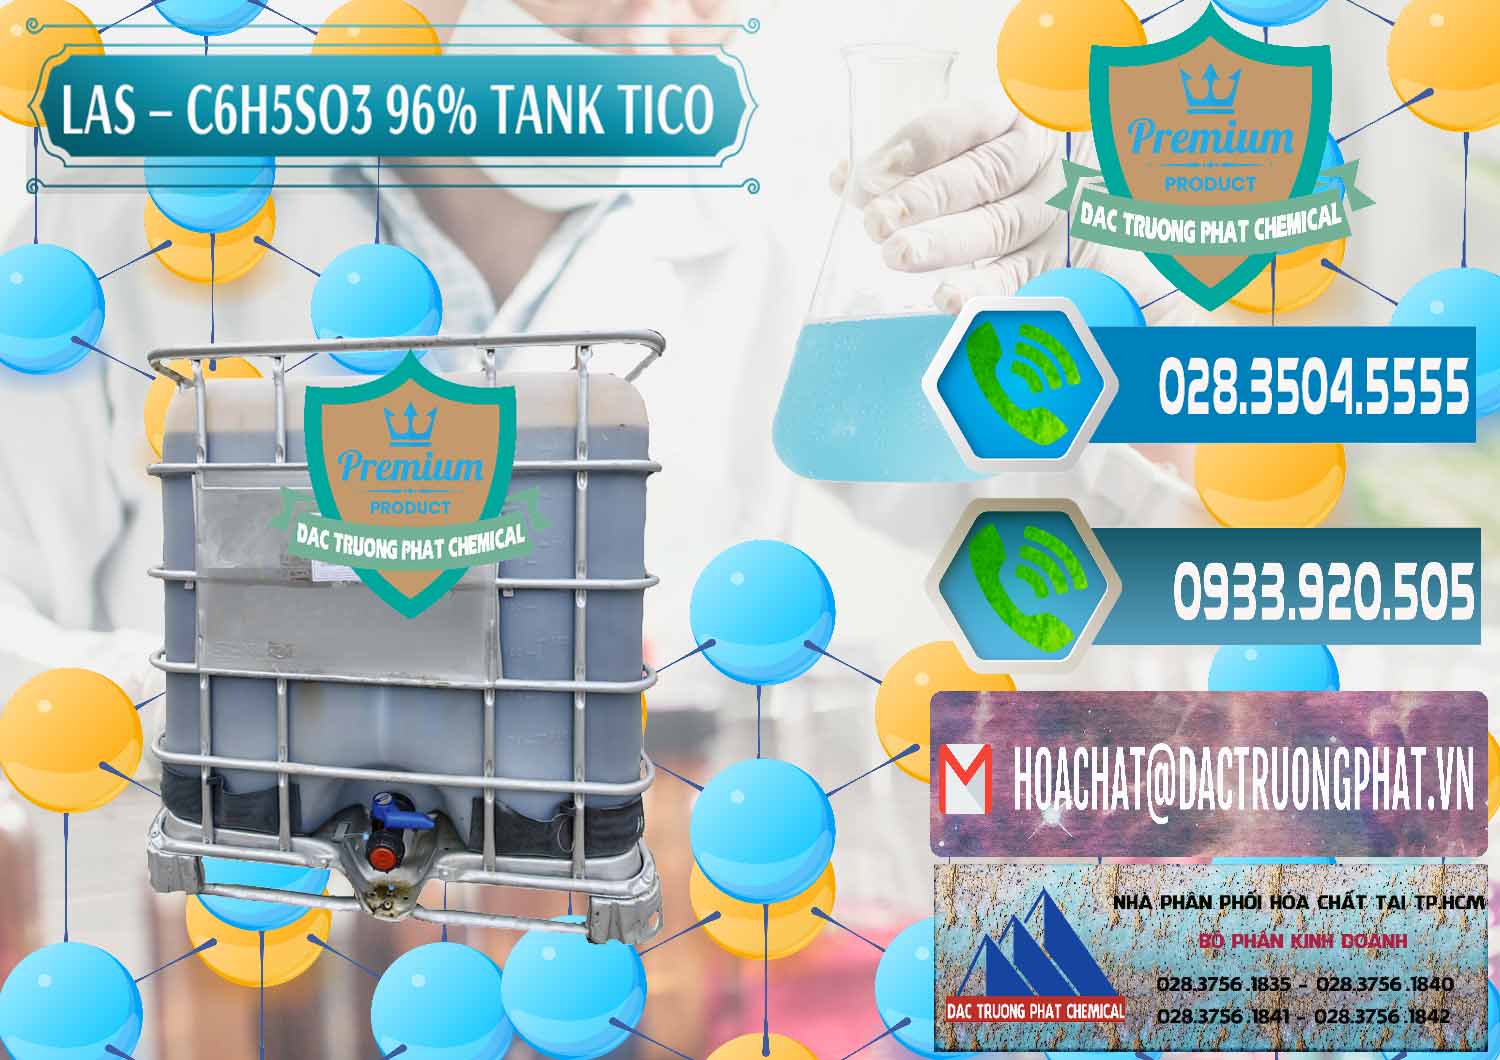 Cty chuyên phân phối - bán Chất tạo bọt Las P Tico Tank IBC Bồn Việt Nam - 0488 - Nhà phân phối - cung ứng hóa chất tại TP.HCM - congtyhoachat.net